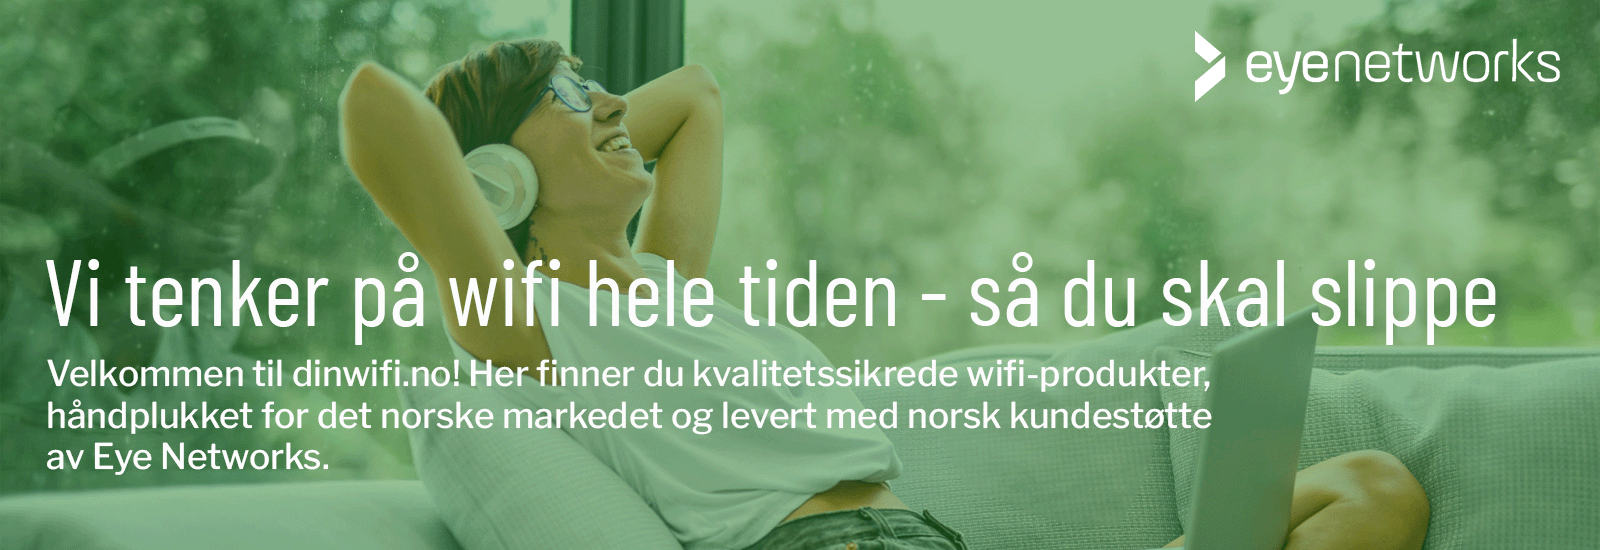 Vi tenker på wifi hele tiden - så du skal slippe. Velkommen til dinwifi.no! Her finner du kvalitetssikrede wifi-produkter, håndplukket for det norske markedet og levert med norsk kundestøtte av Eye Networks.